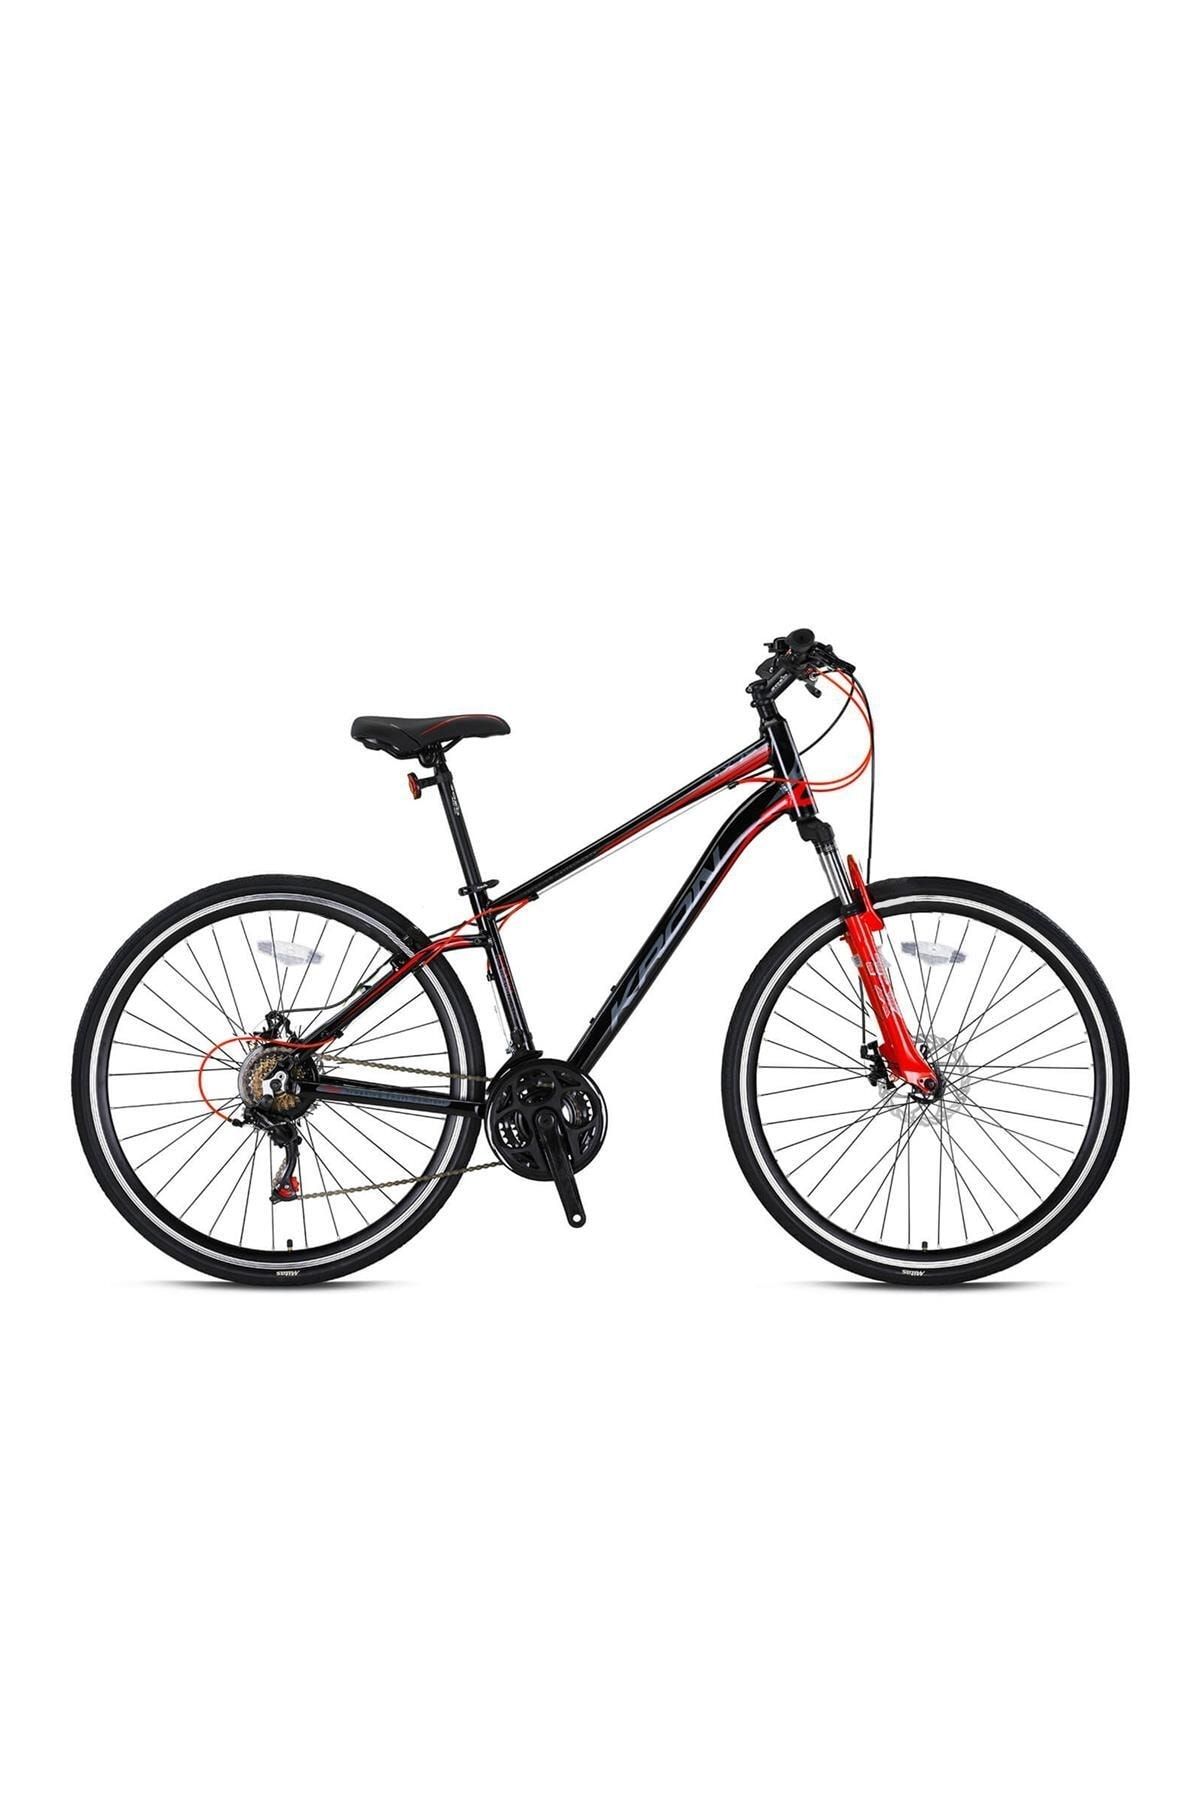 Kron Tx75 28 Hd 20 Erkek Trekking Şehir Bisikleti Siyah-kırmızı